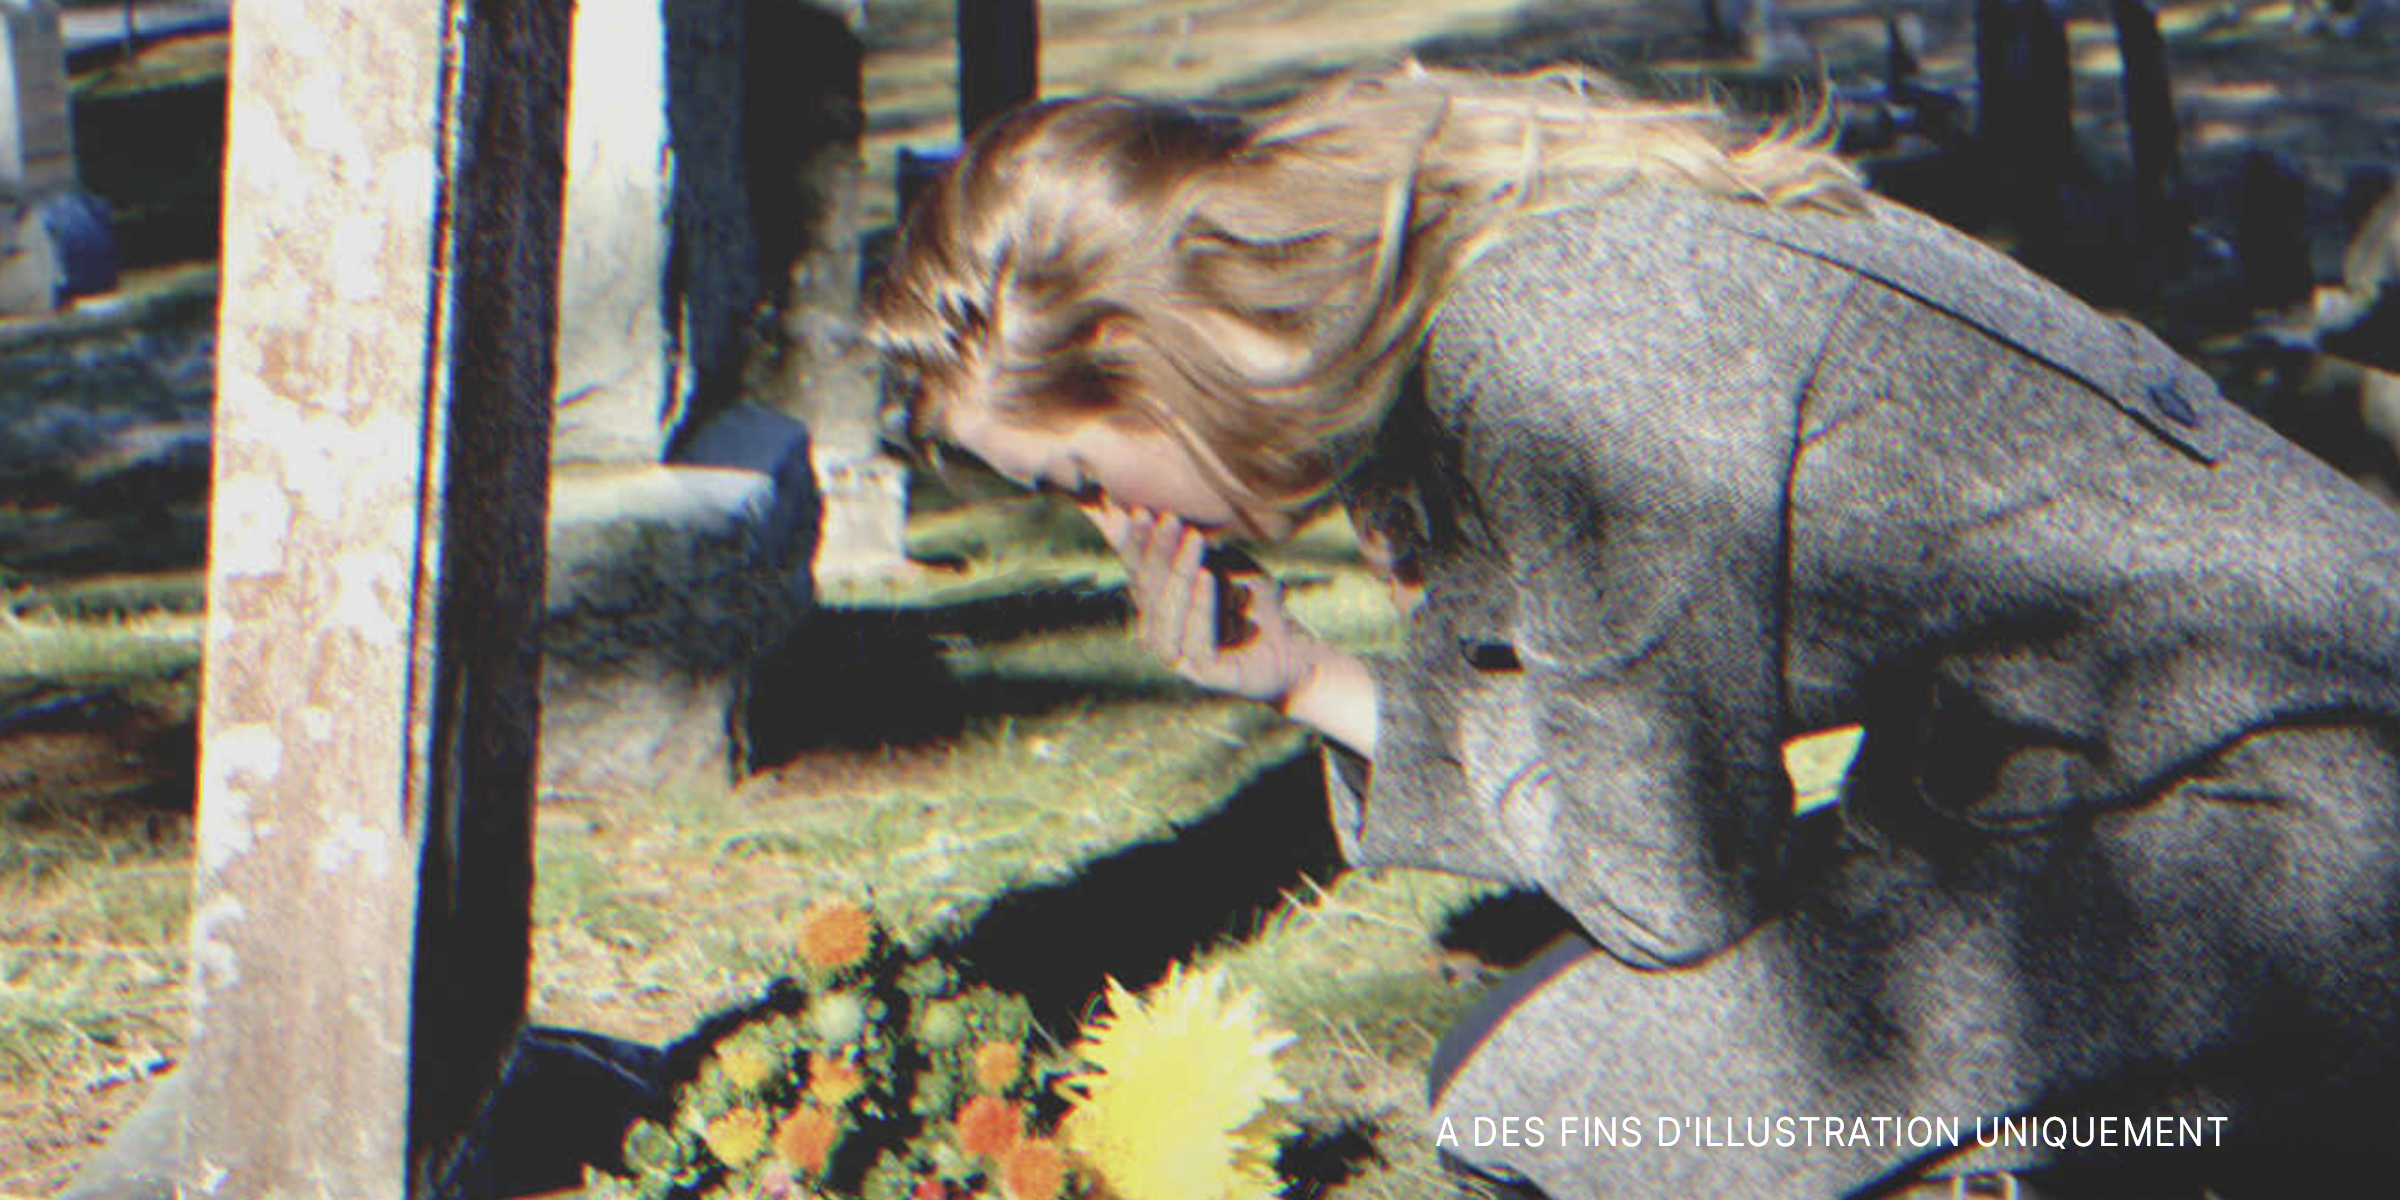 Femme en deuil près d'une tombe | Source : Flickr